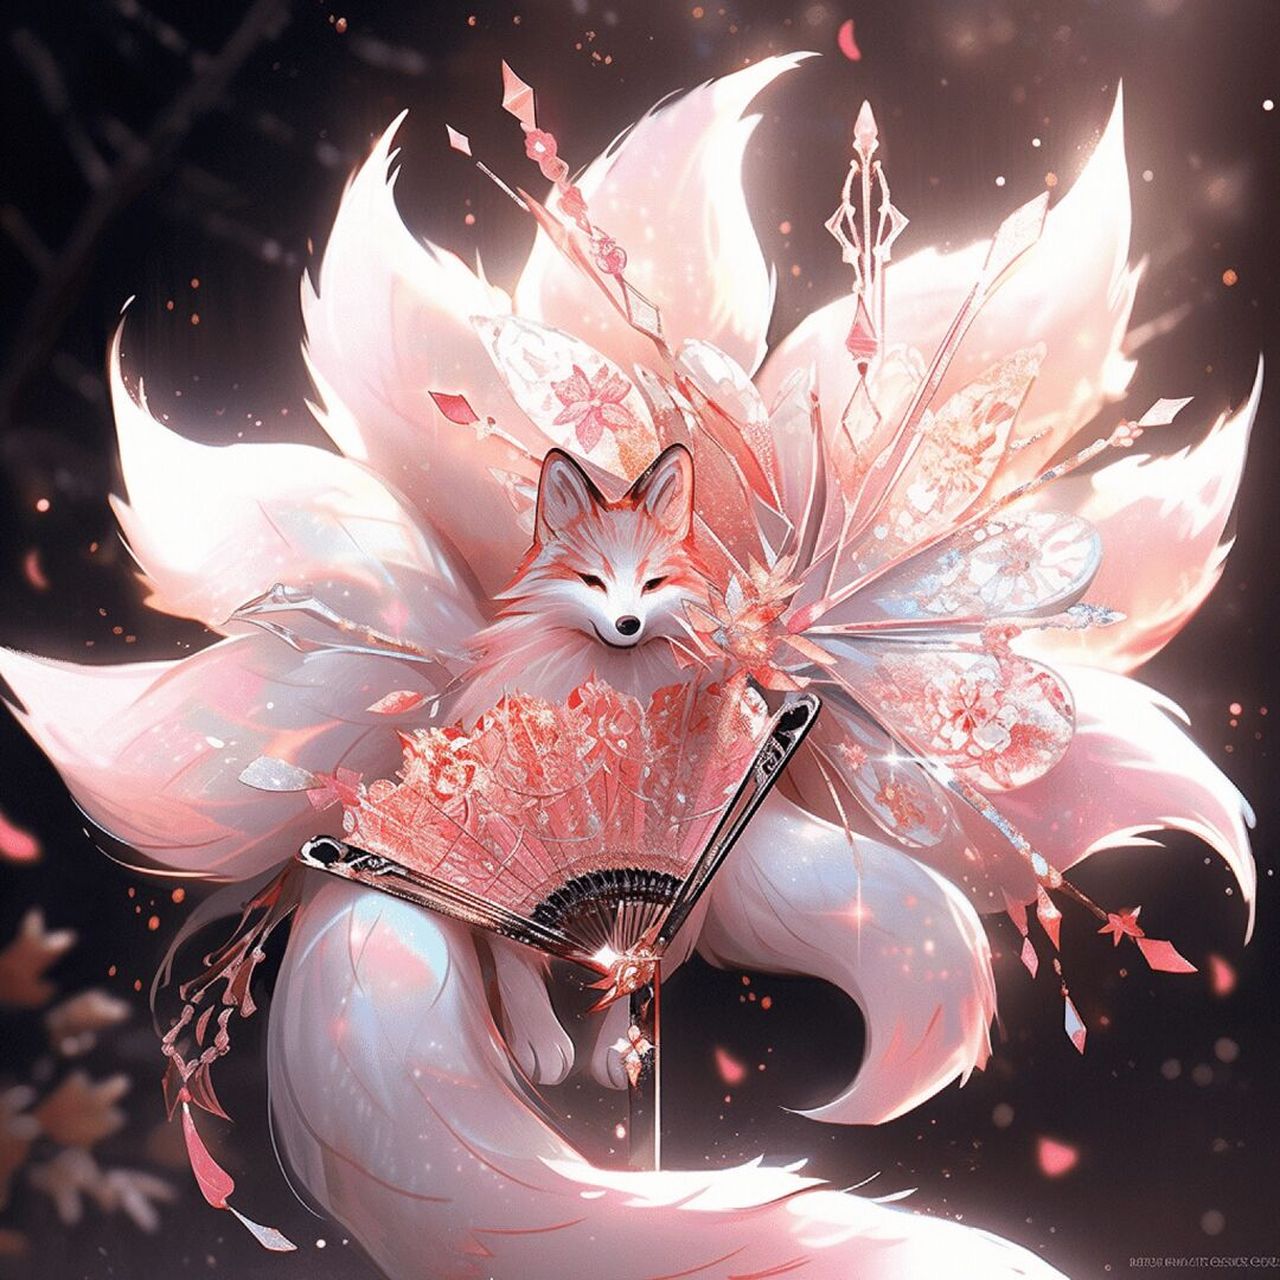 魅惑九尾狐  九尾狐是中国古代神话传说中的神异动物,形象为一只长有